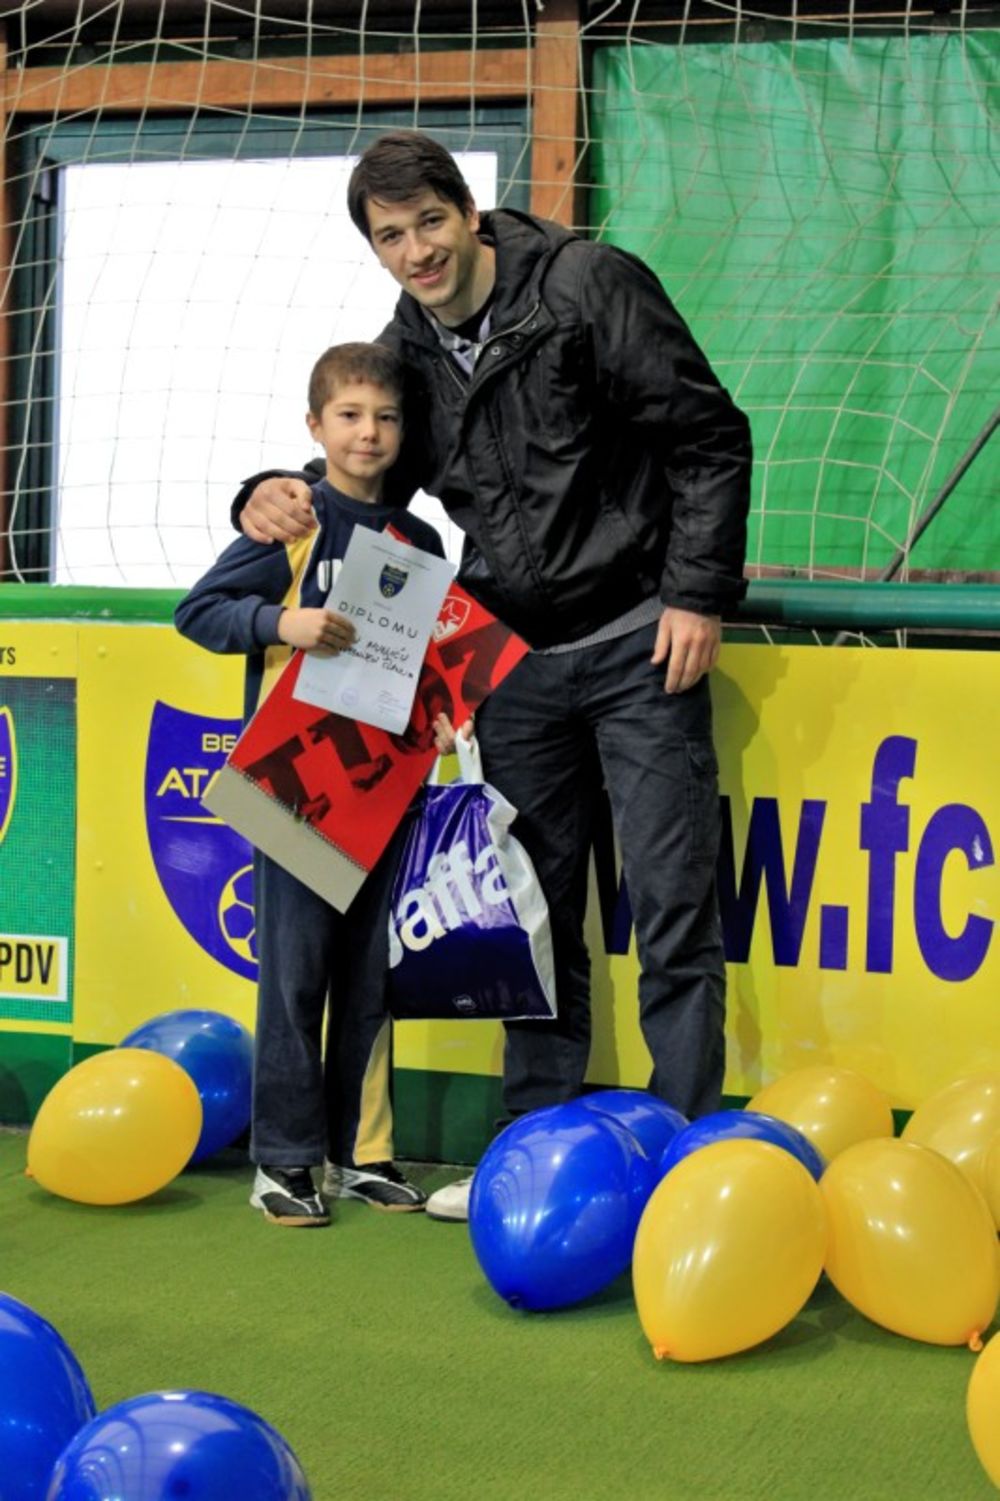 Popularni glumac prisustvovao je novogodišnjoj proslavi Internacionalne škole malog fudbala Atacante